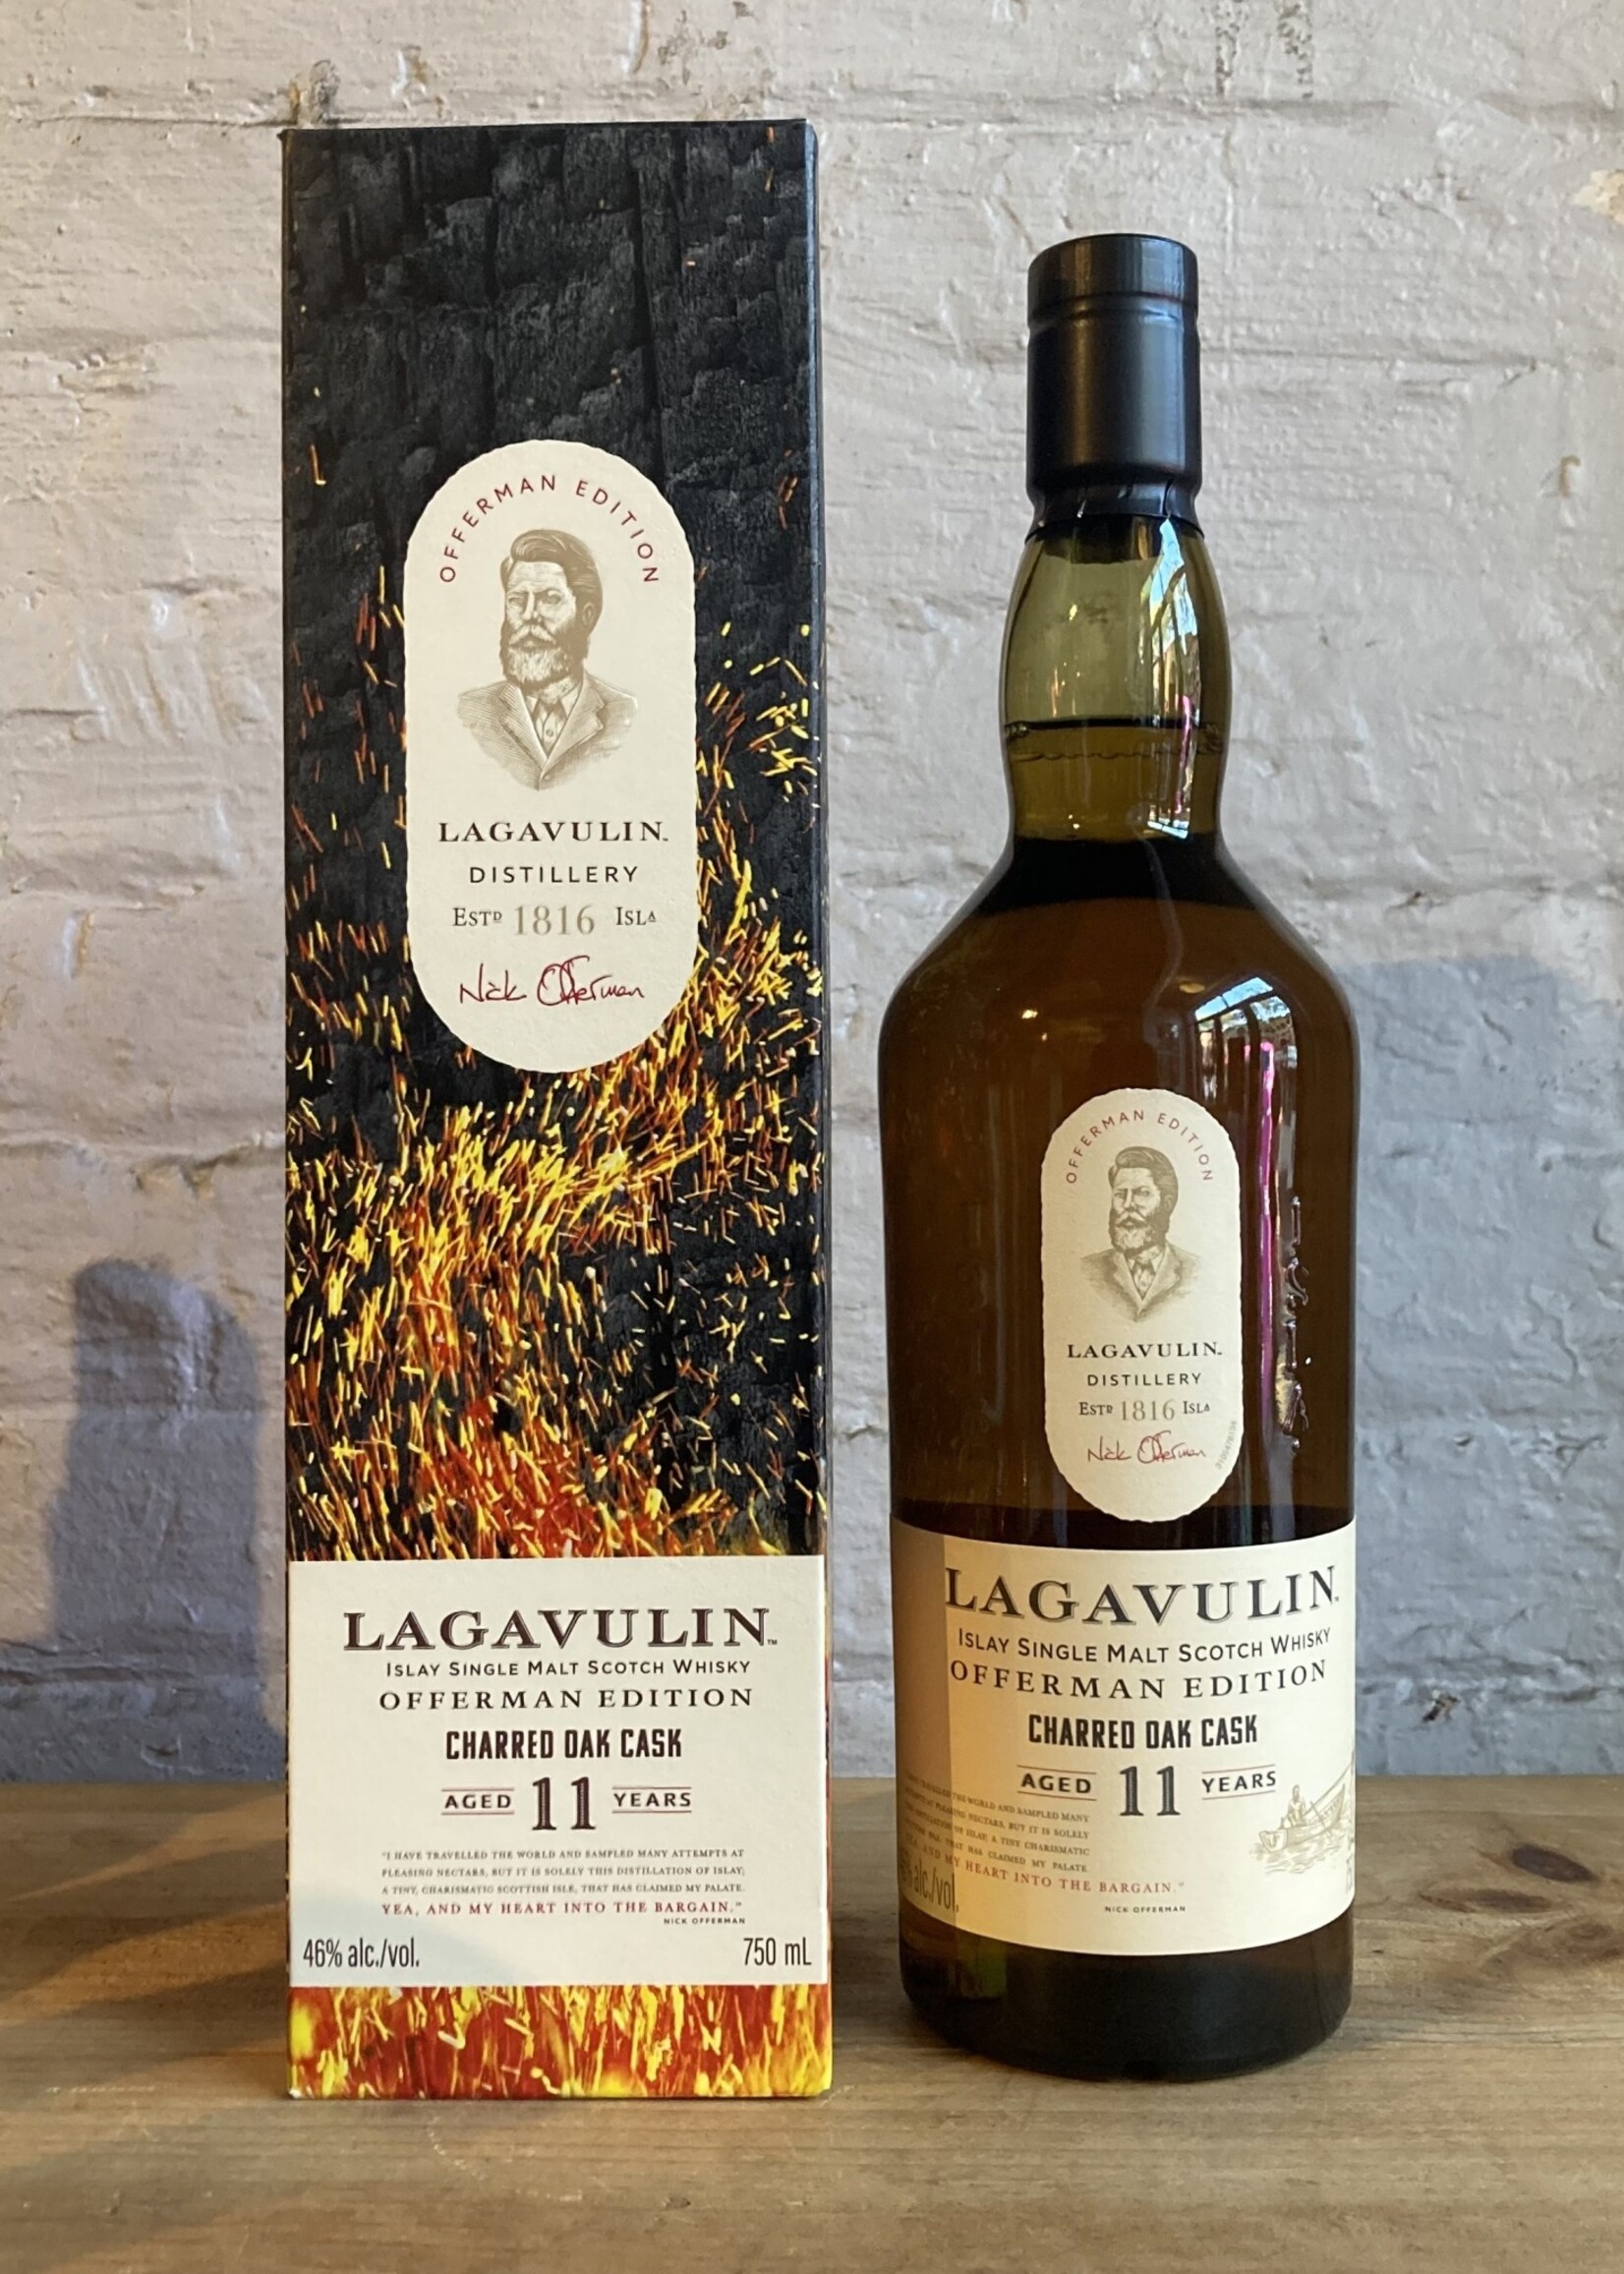 Lagavulin 11yr Single Malt Scotch Whisky Offerman Edition Charred Oak Cask - Islay, Scotland (750ml)